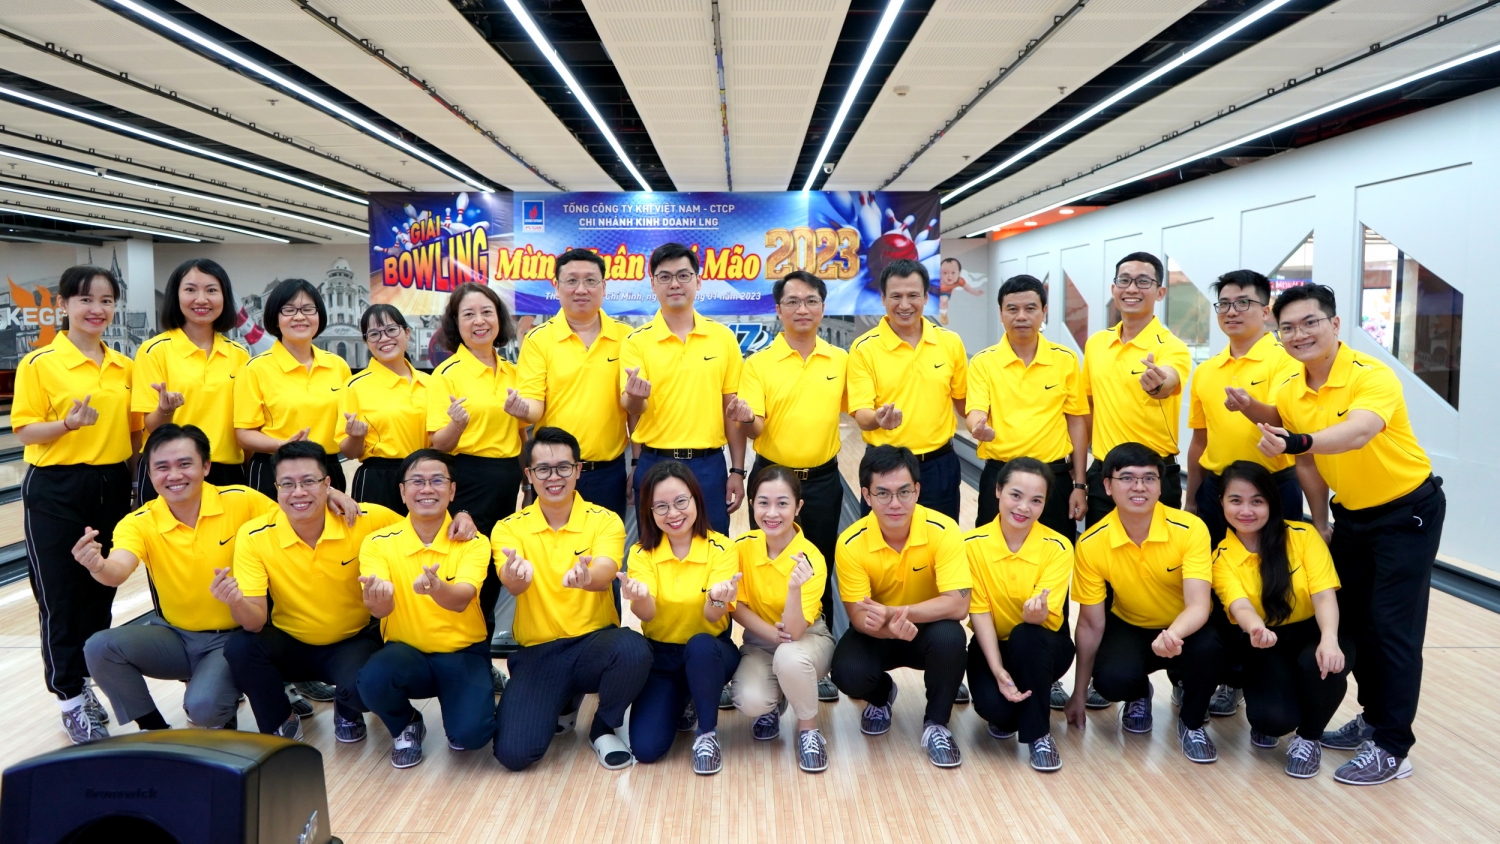 Chi nhánh Kinh doanh LNG (PV GAS LNG) đã tổ chức thành công Giải Bowling mừng xuân Quỹ Mão 2023